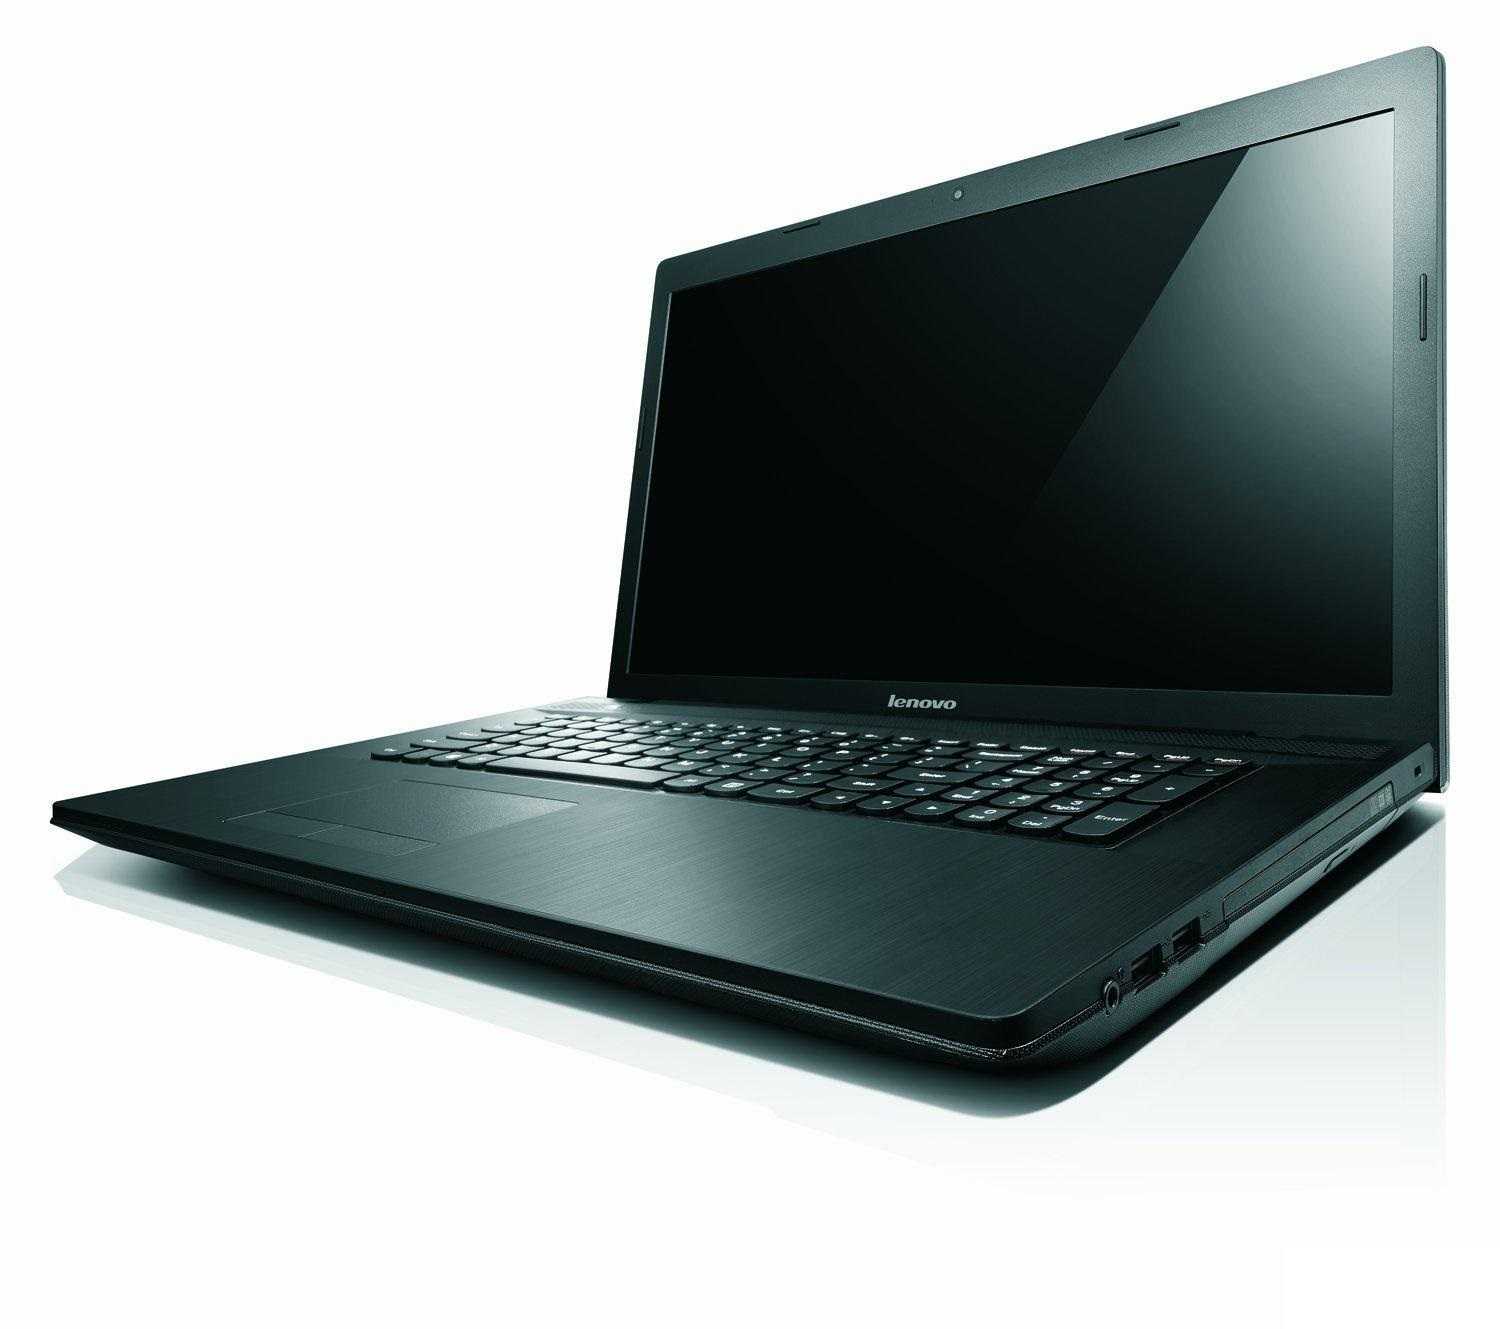 Ноутбук Lenovo G700A (59-401262) - подробные характеристики обзоры видео фото Цены в интернет-магазинах где можно купить ноутбук Lenovo G700A (59-401262)